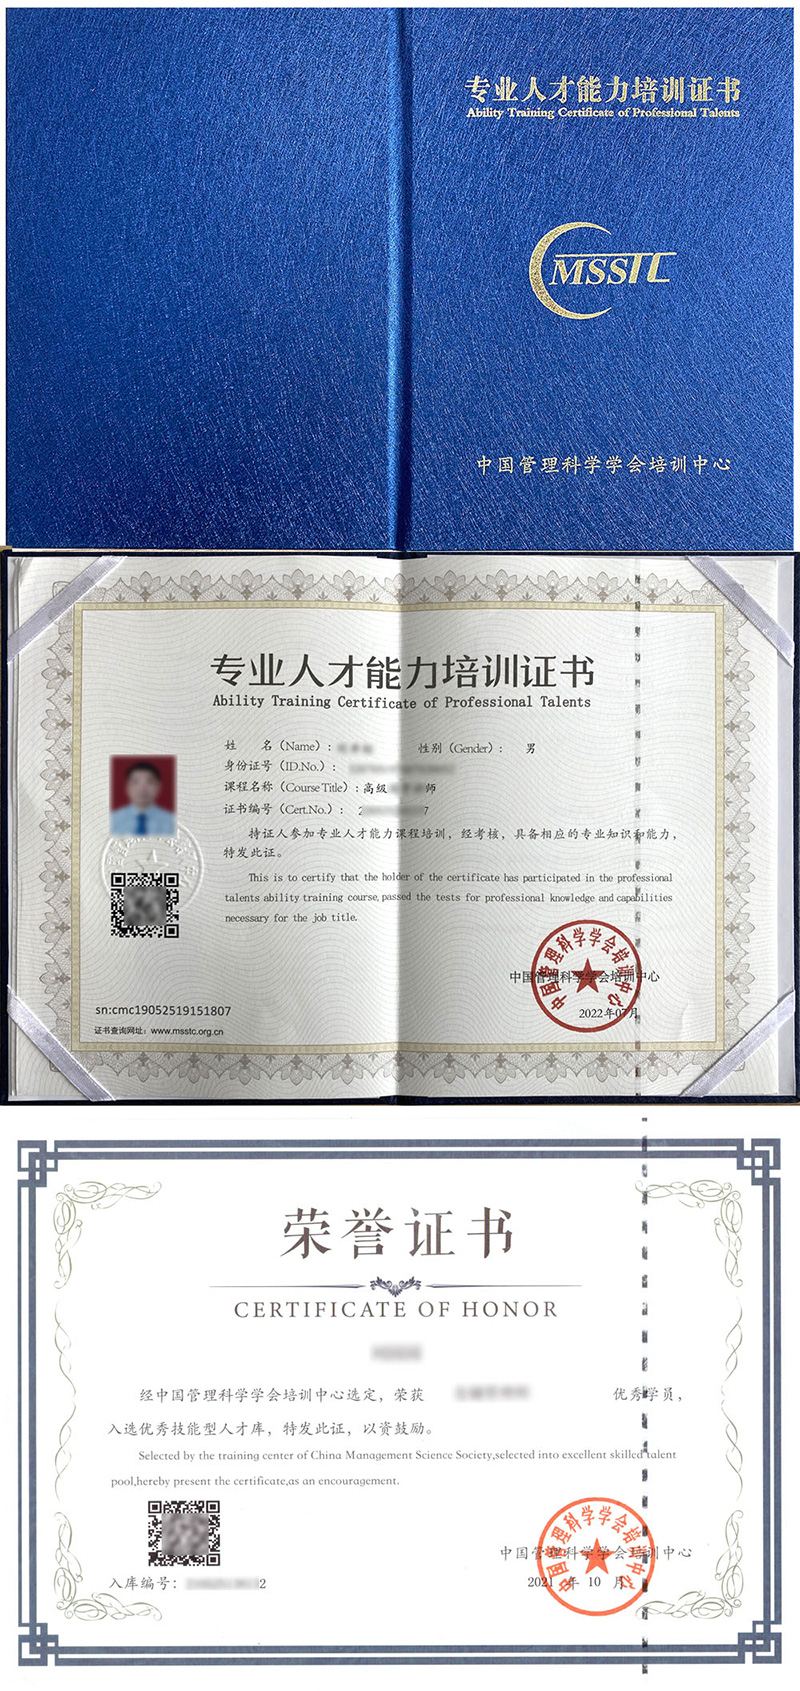 中国管理科学学会培训中心 专业人才能力培训证书 EAP咨询师证证书样本